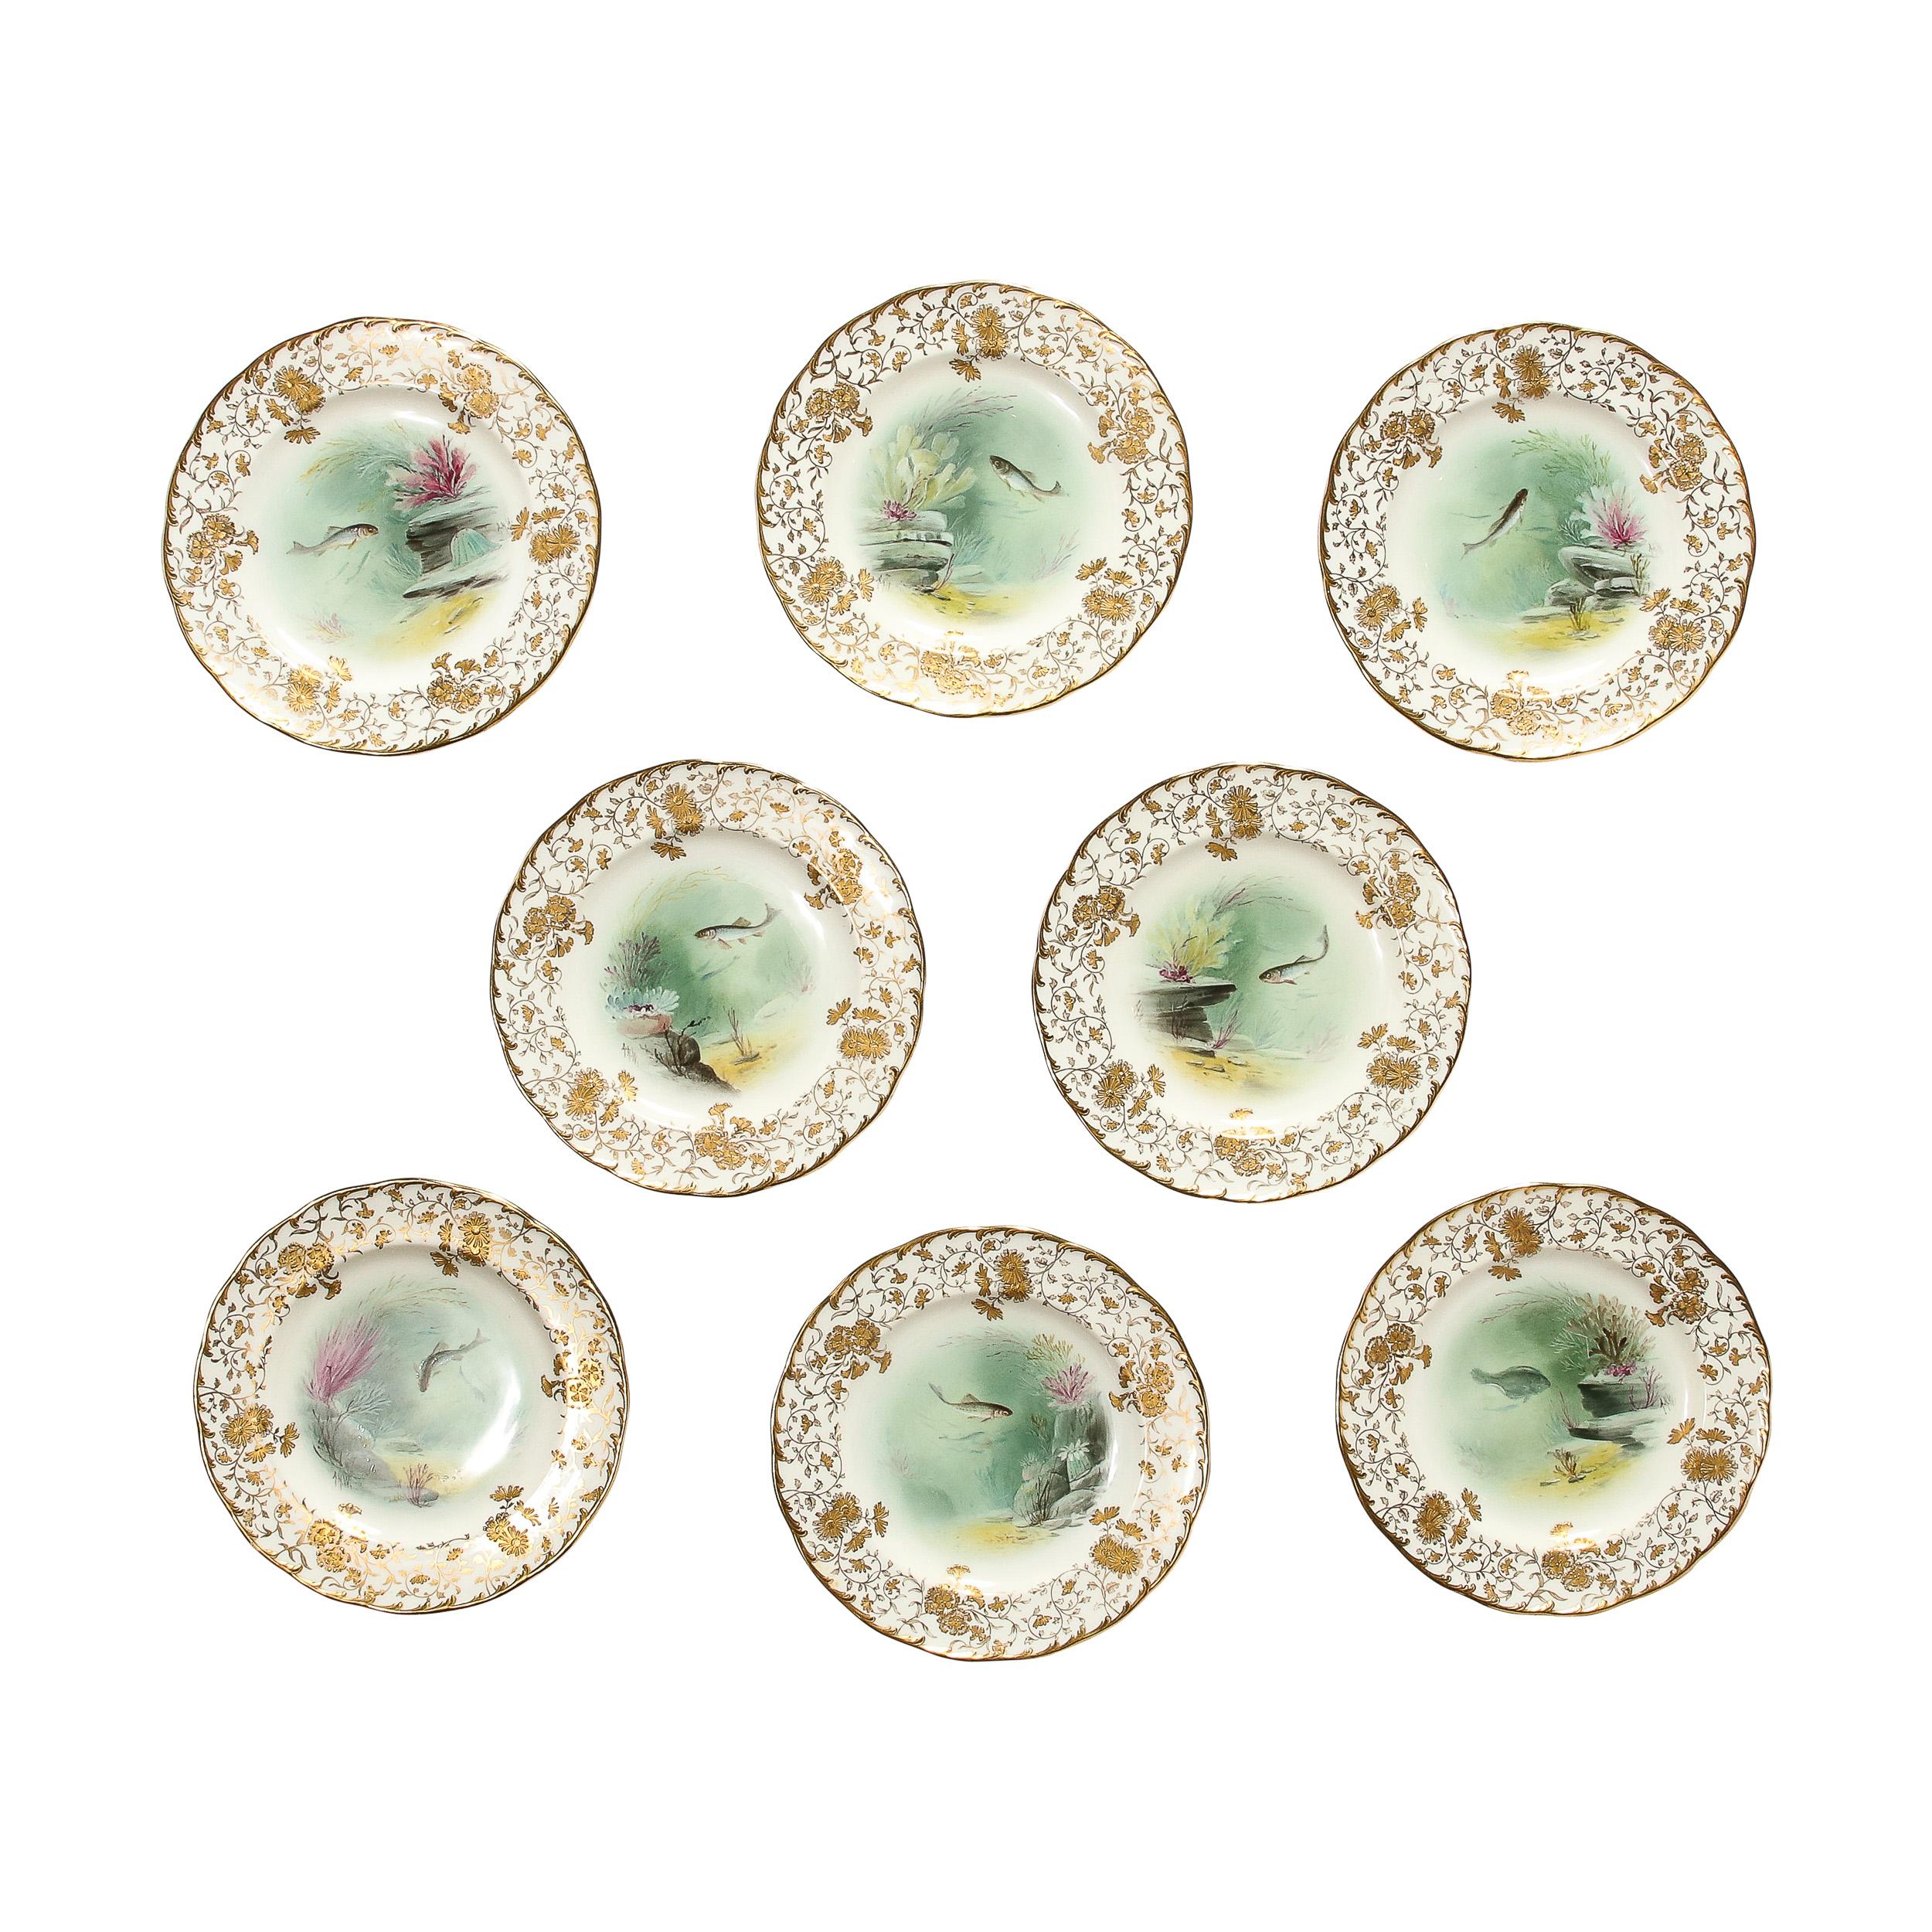 Cette exquise  Cet ensemble de huit assiettes en porcelaine de Minton peintes à la main et représentant des poissons, signé A. Holland, provient d'Angleterre et date d'environ 1900. Le bord de chaque assiette présente des motifs floraux dorés